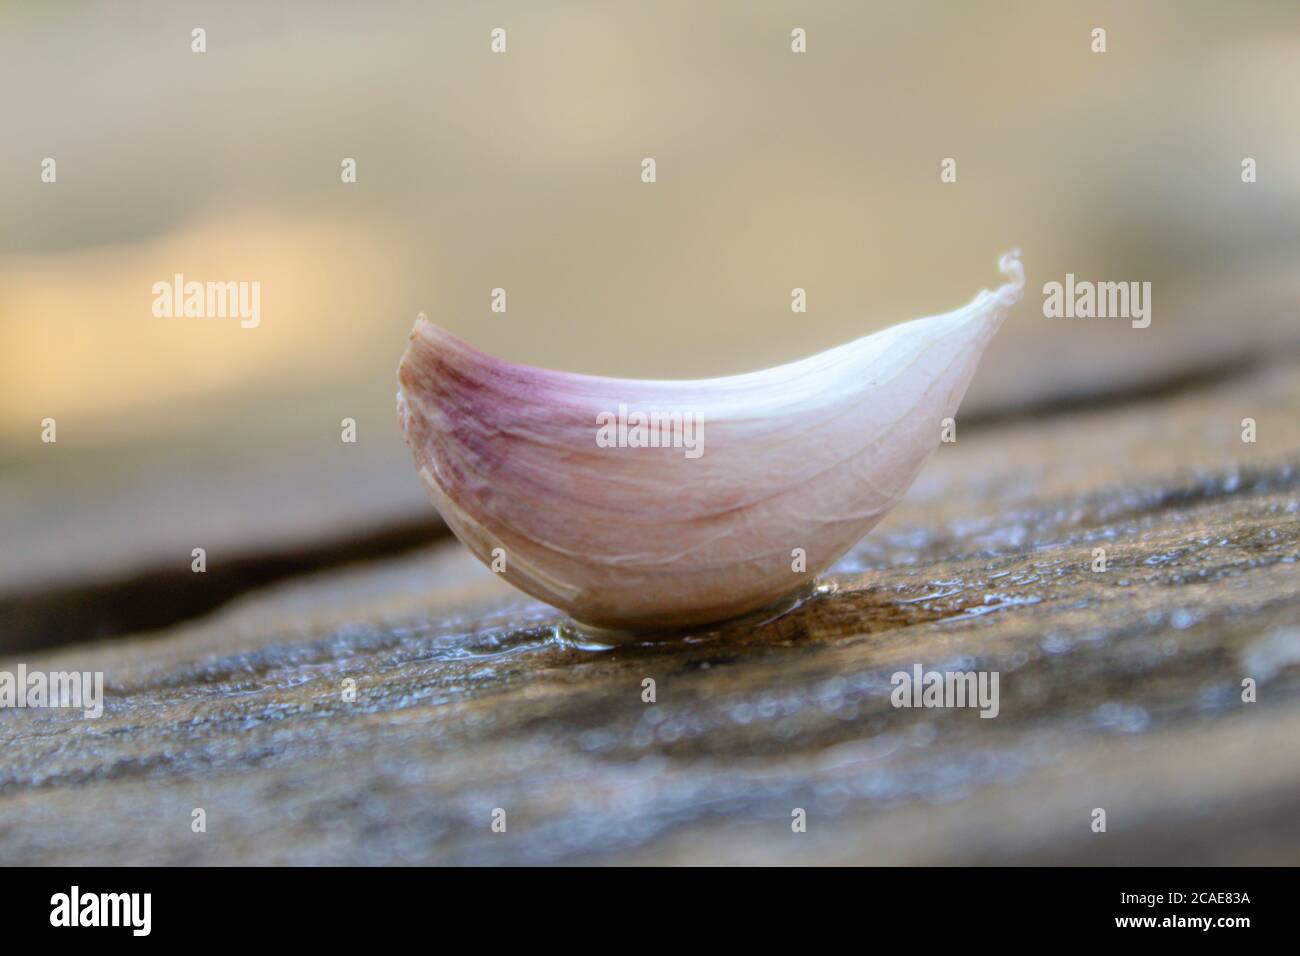 Garlic clove on a wooden table closeup Stock Photo